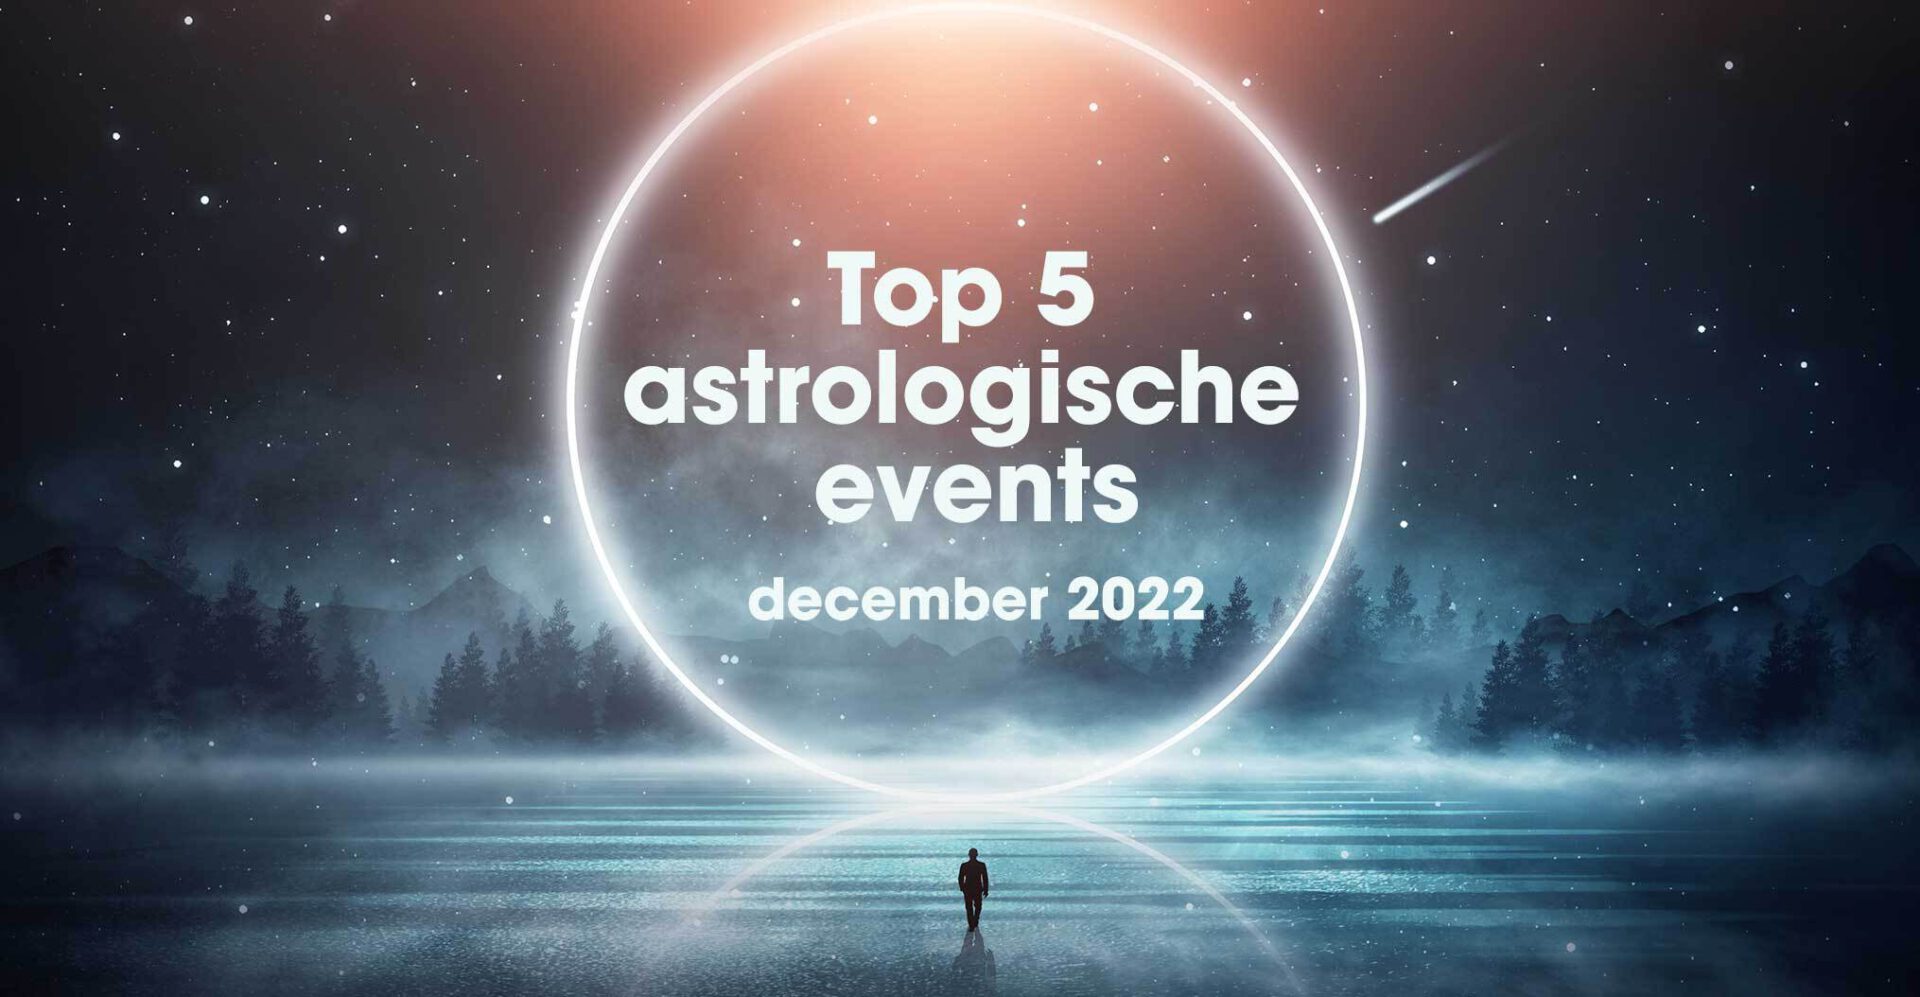 Top 5 astrologische transits en events in december 2022